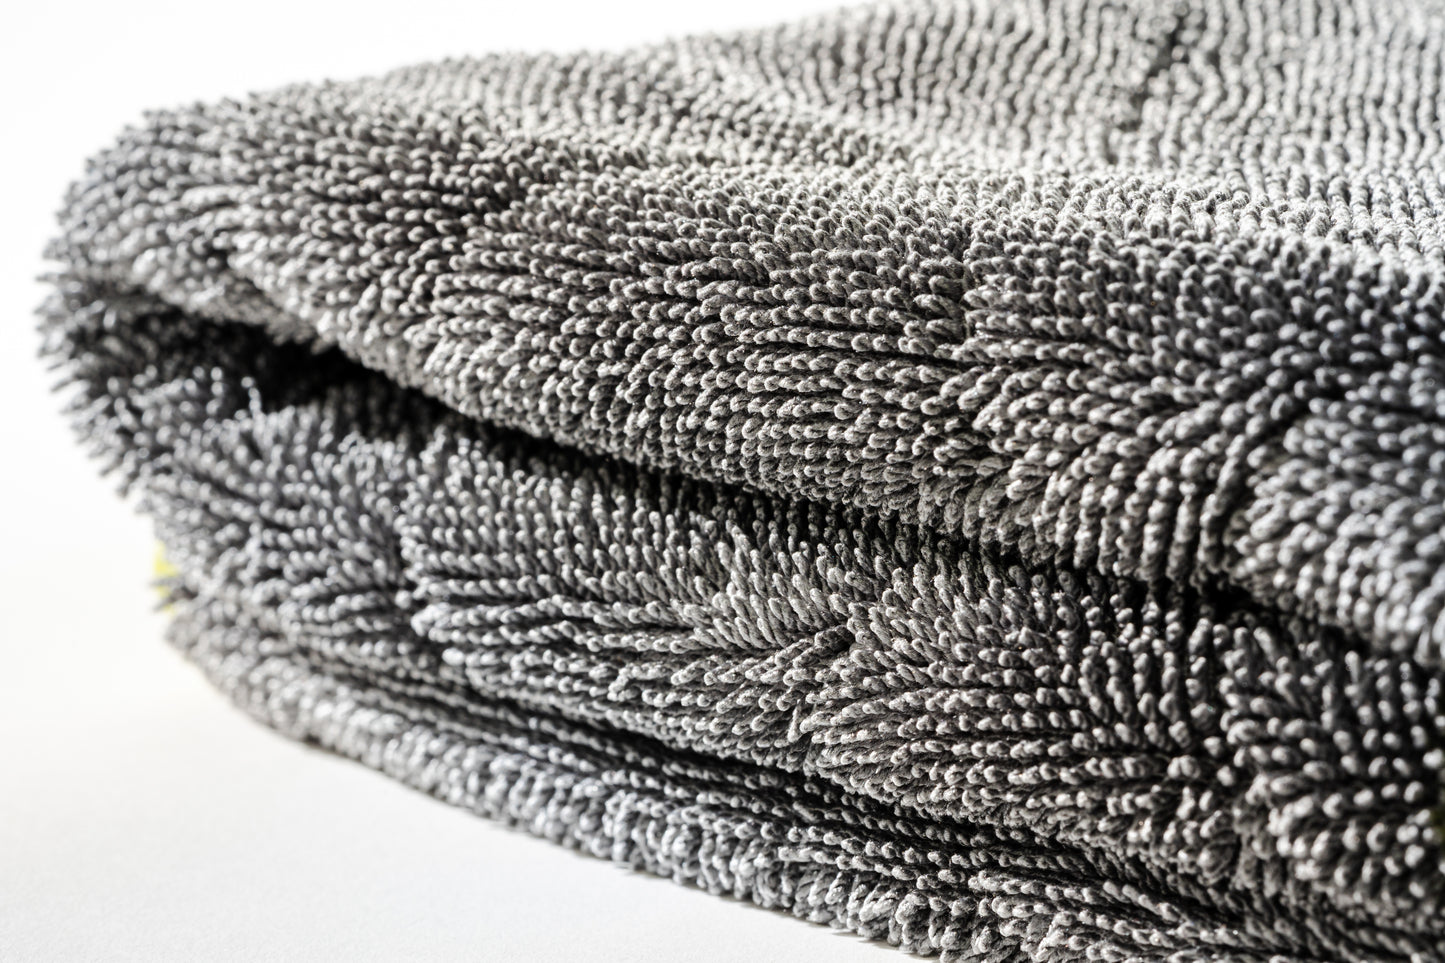 Microfiber versus Cotton, best dog towel